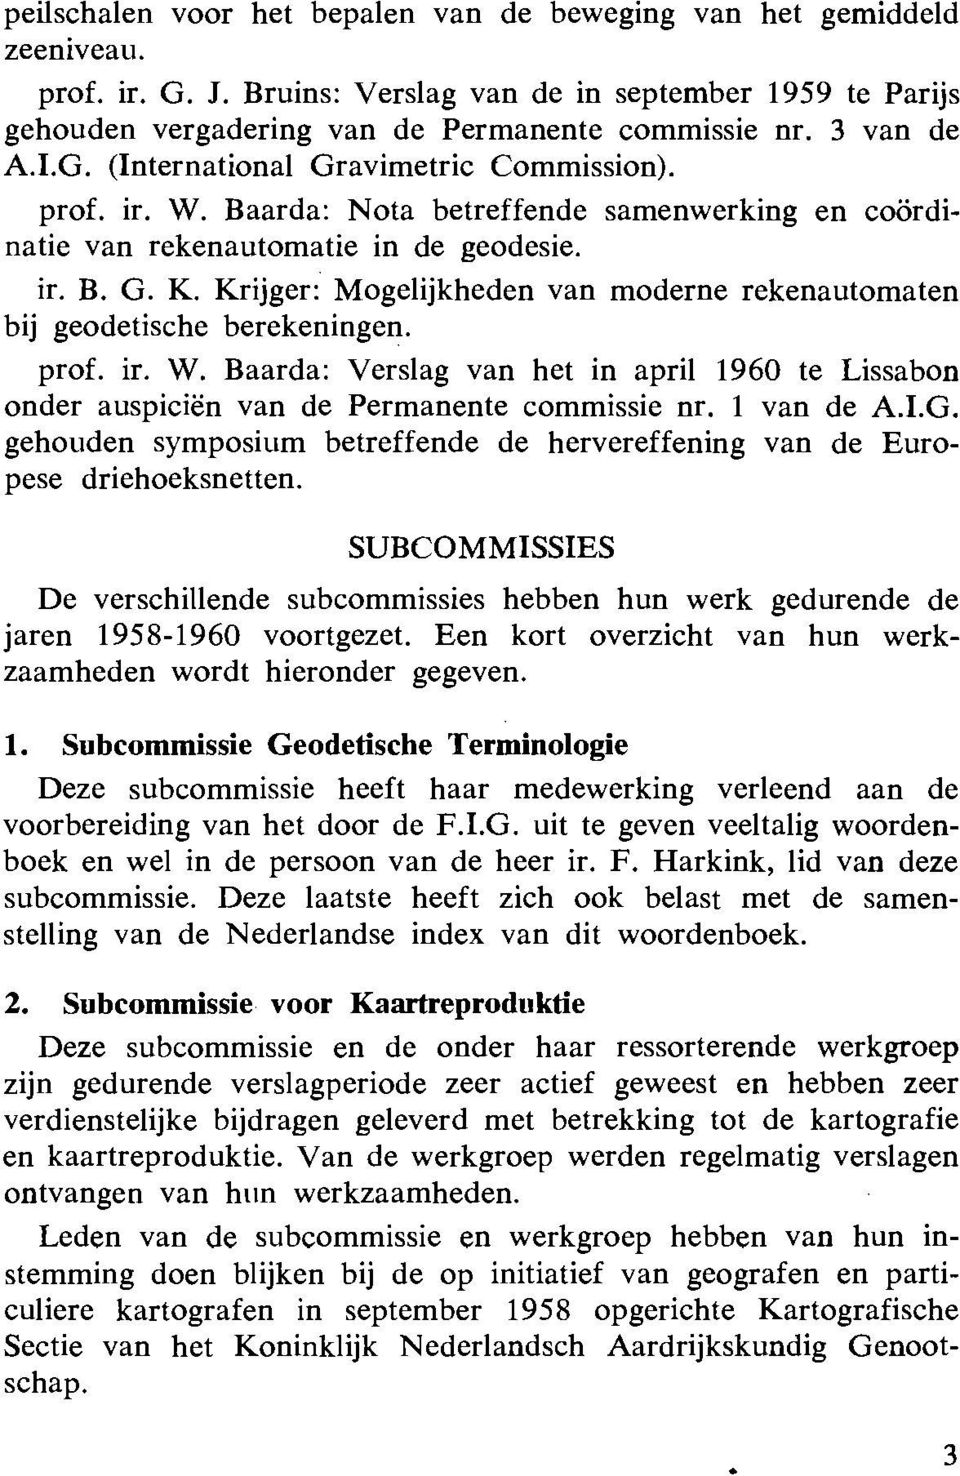 Krijger: Mogelijkheden van moderne rekenautomaten bij geodetische berekeningen. prof. ir. W. Baarda: Verslag van het in april 1960 te Lissabon onder auspiciën van de Permanente commissie nr.